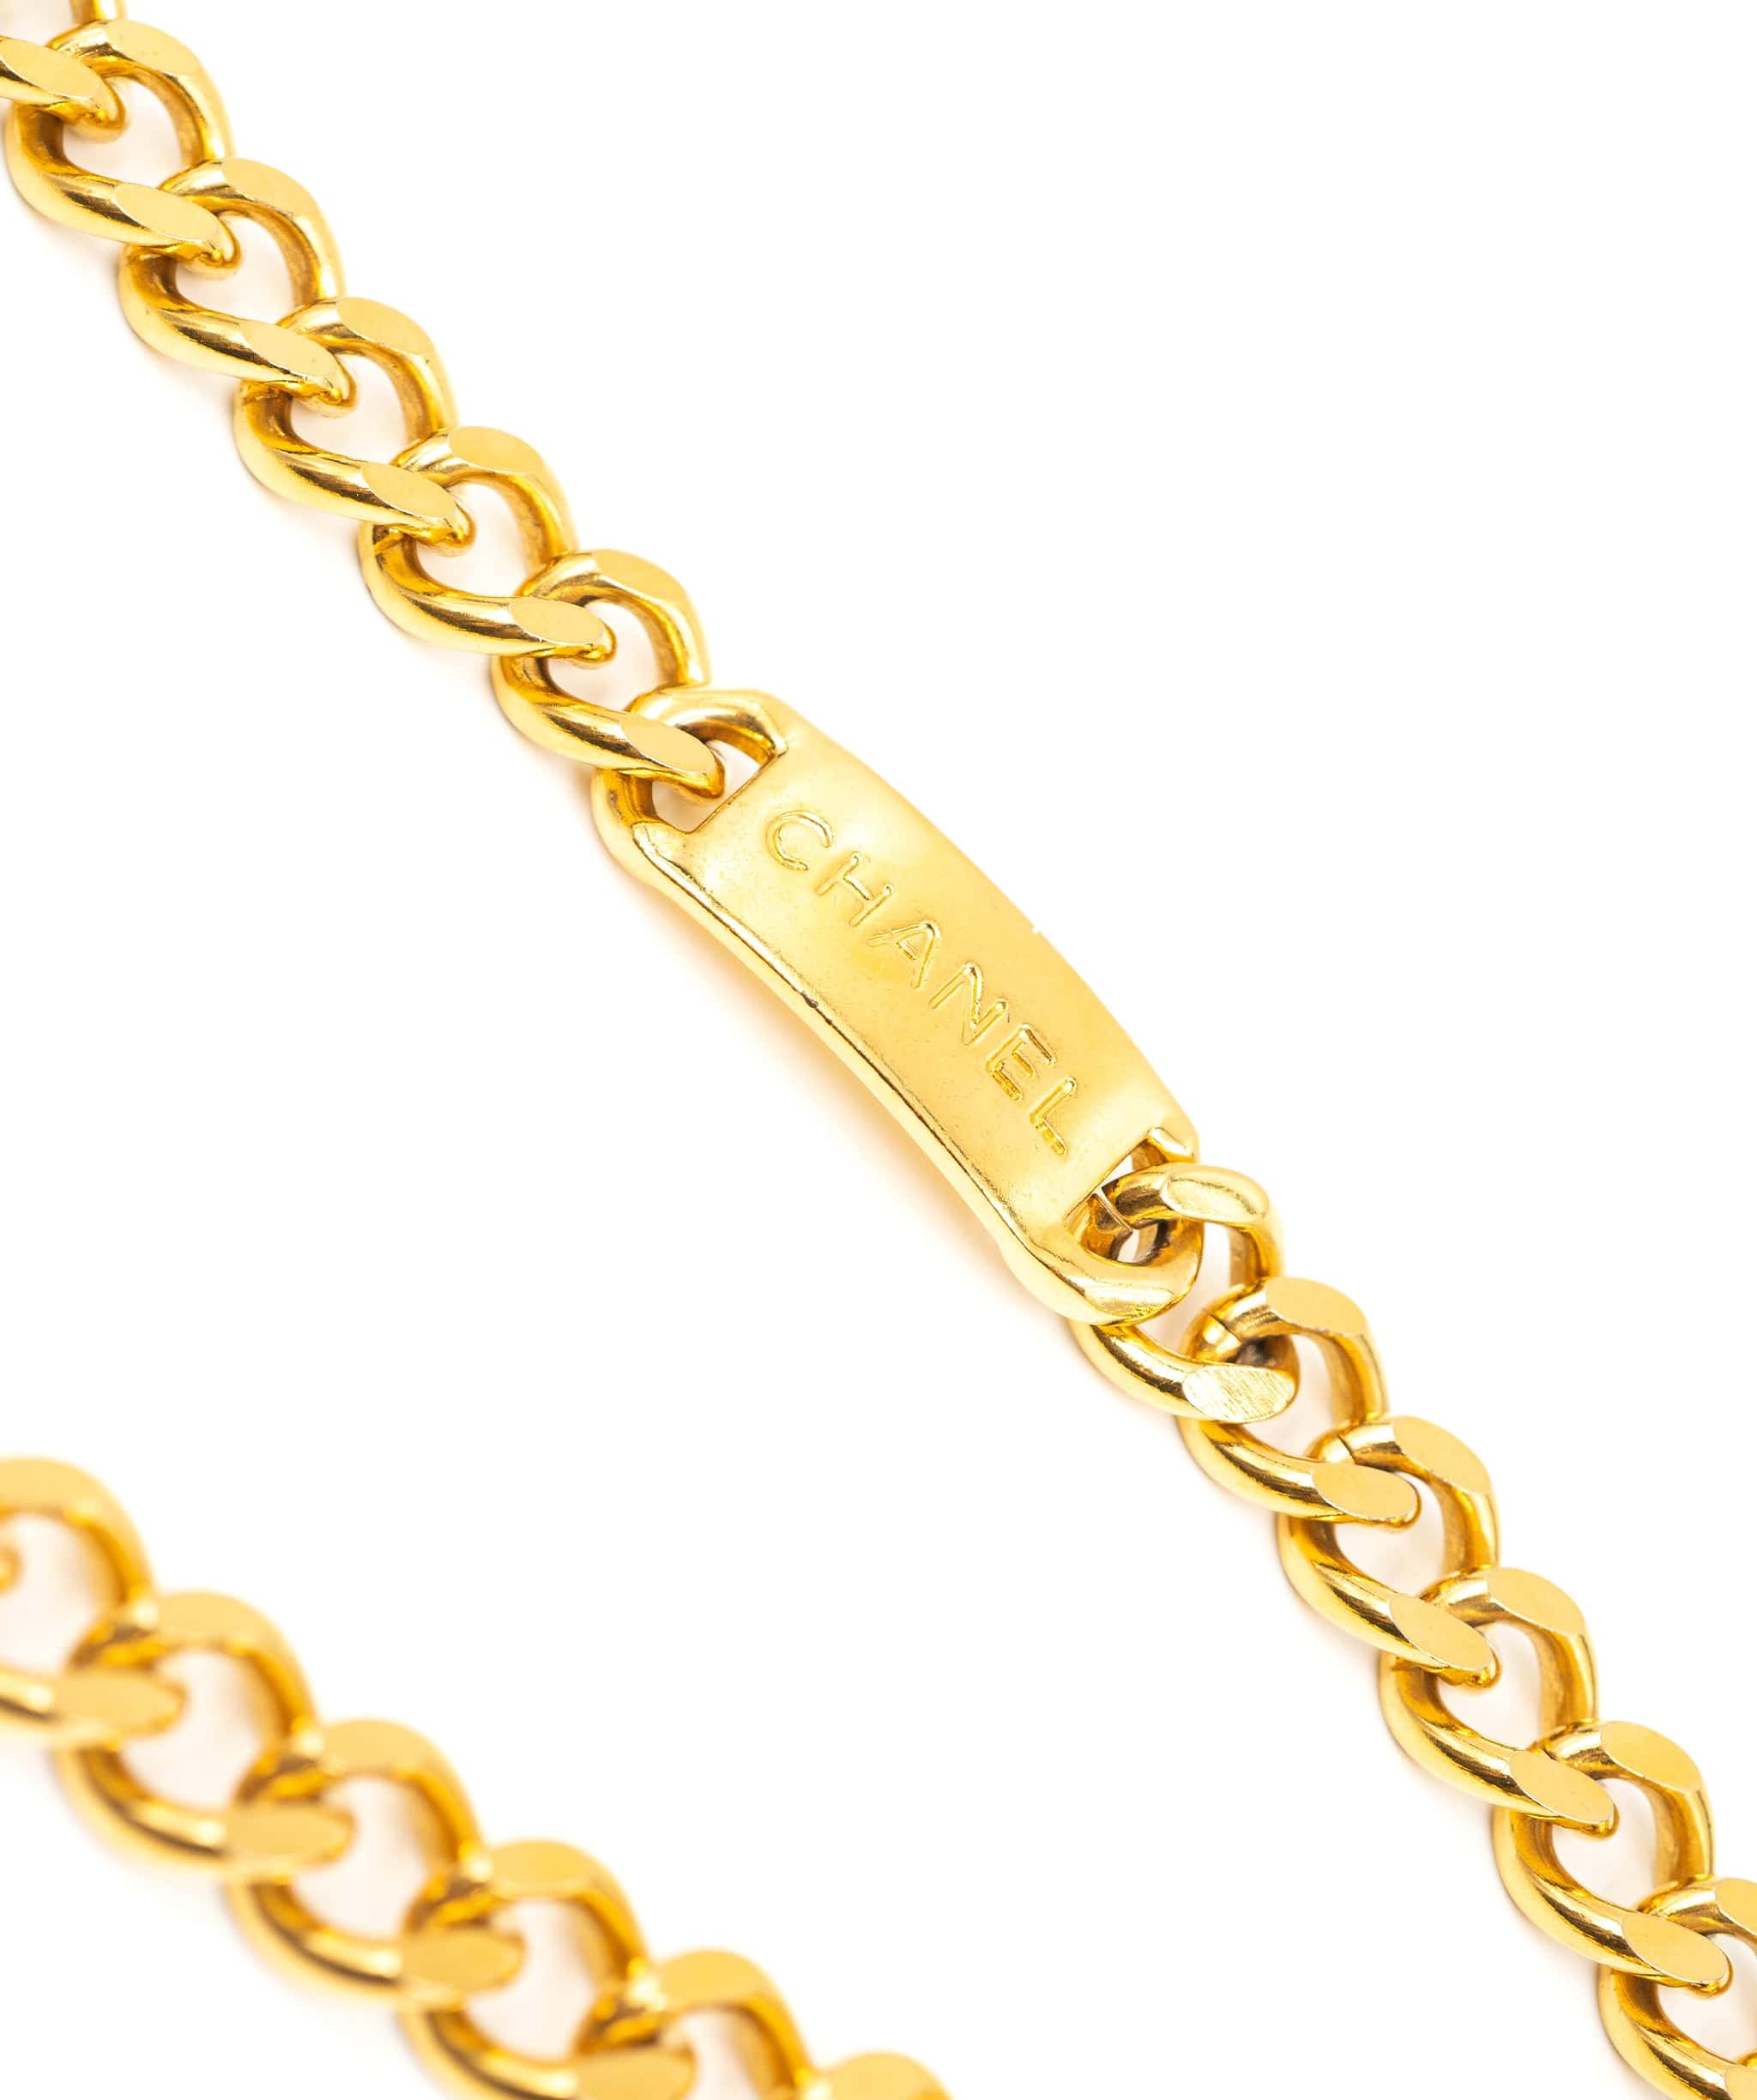 Chanel Vintage Chanel Gold Plated CC Medallion Charm Vintage Belt - ASL2375